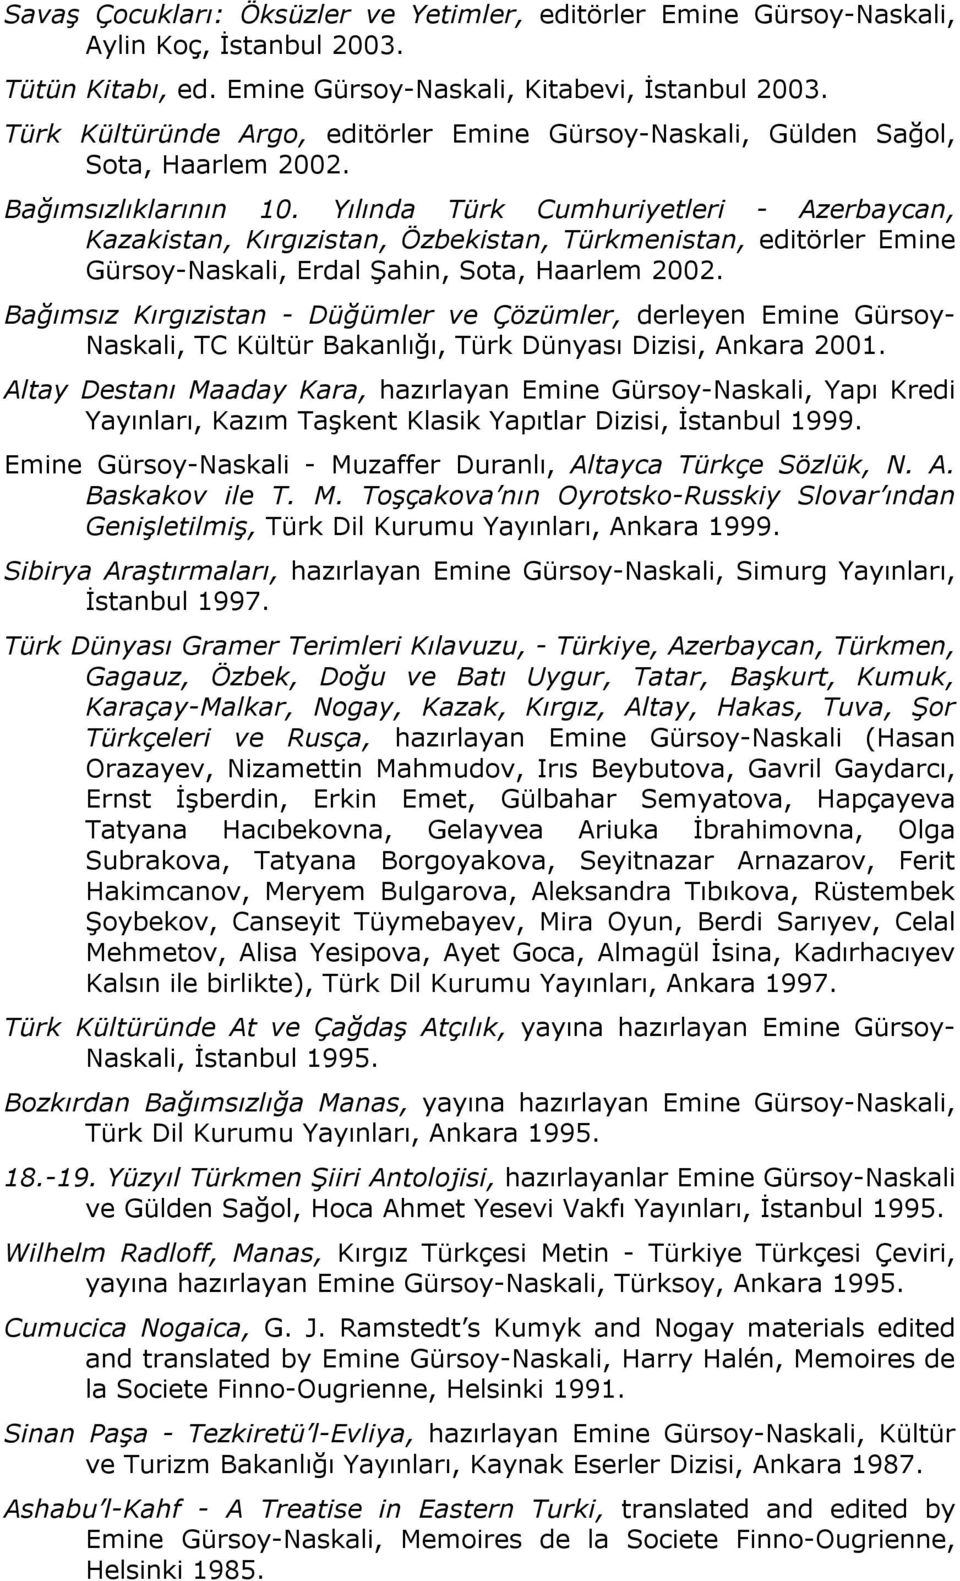 Yılında Türk Cumhuriyetleri - Azerbaycan, Kazakistan, Kırgızistan, Özbekistan, Türkmenistan, editörler Emine Gürsoy-Naskali, Erdal Şahin, Sota, Haarlem 2002.